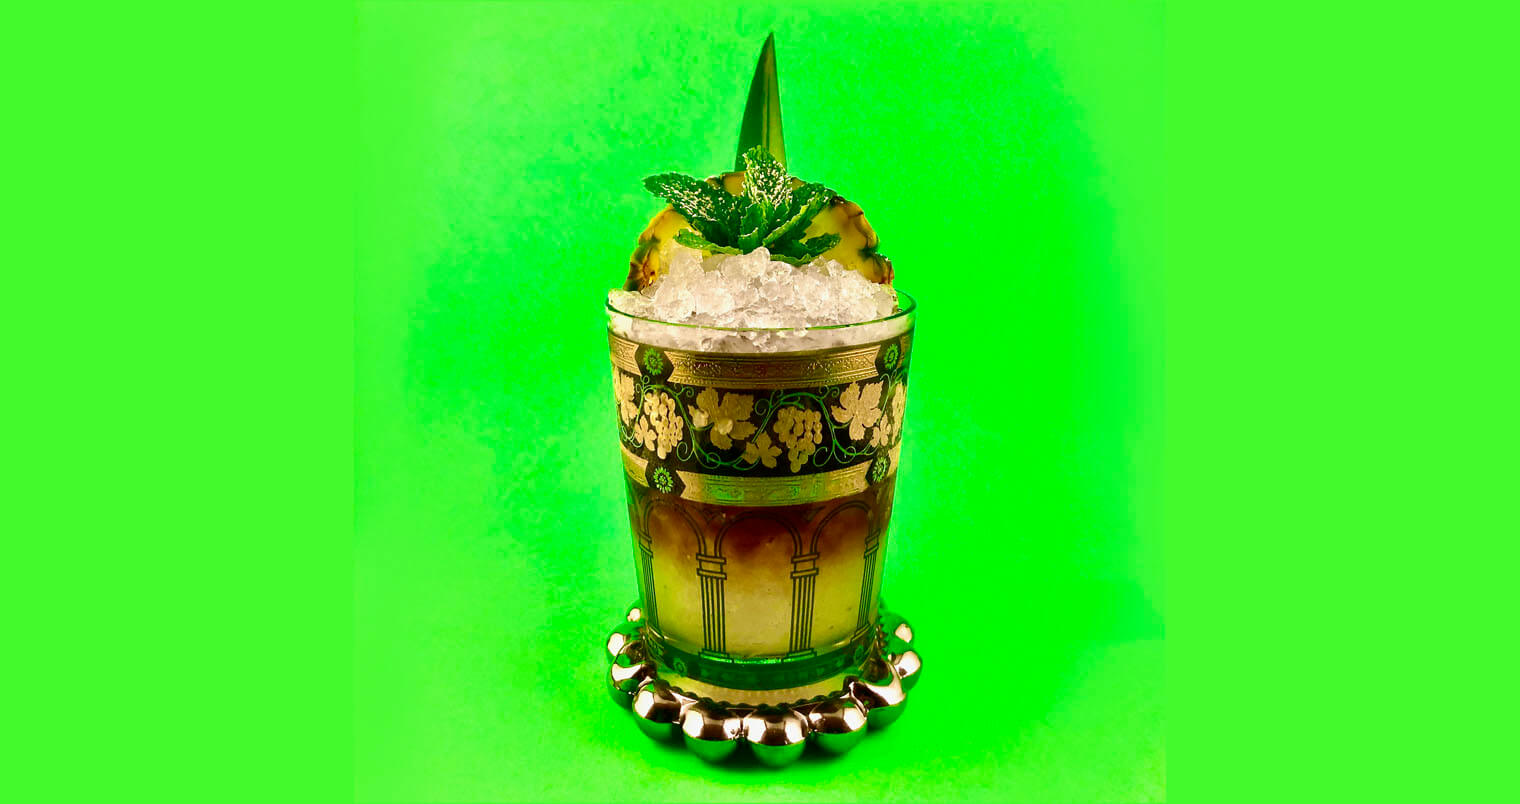 Trick Pot Cobbler, garnished cocktail, green background, featured image